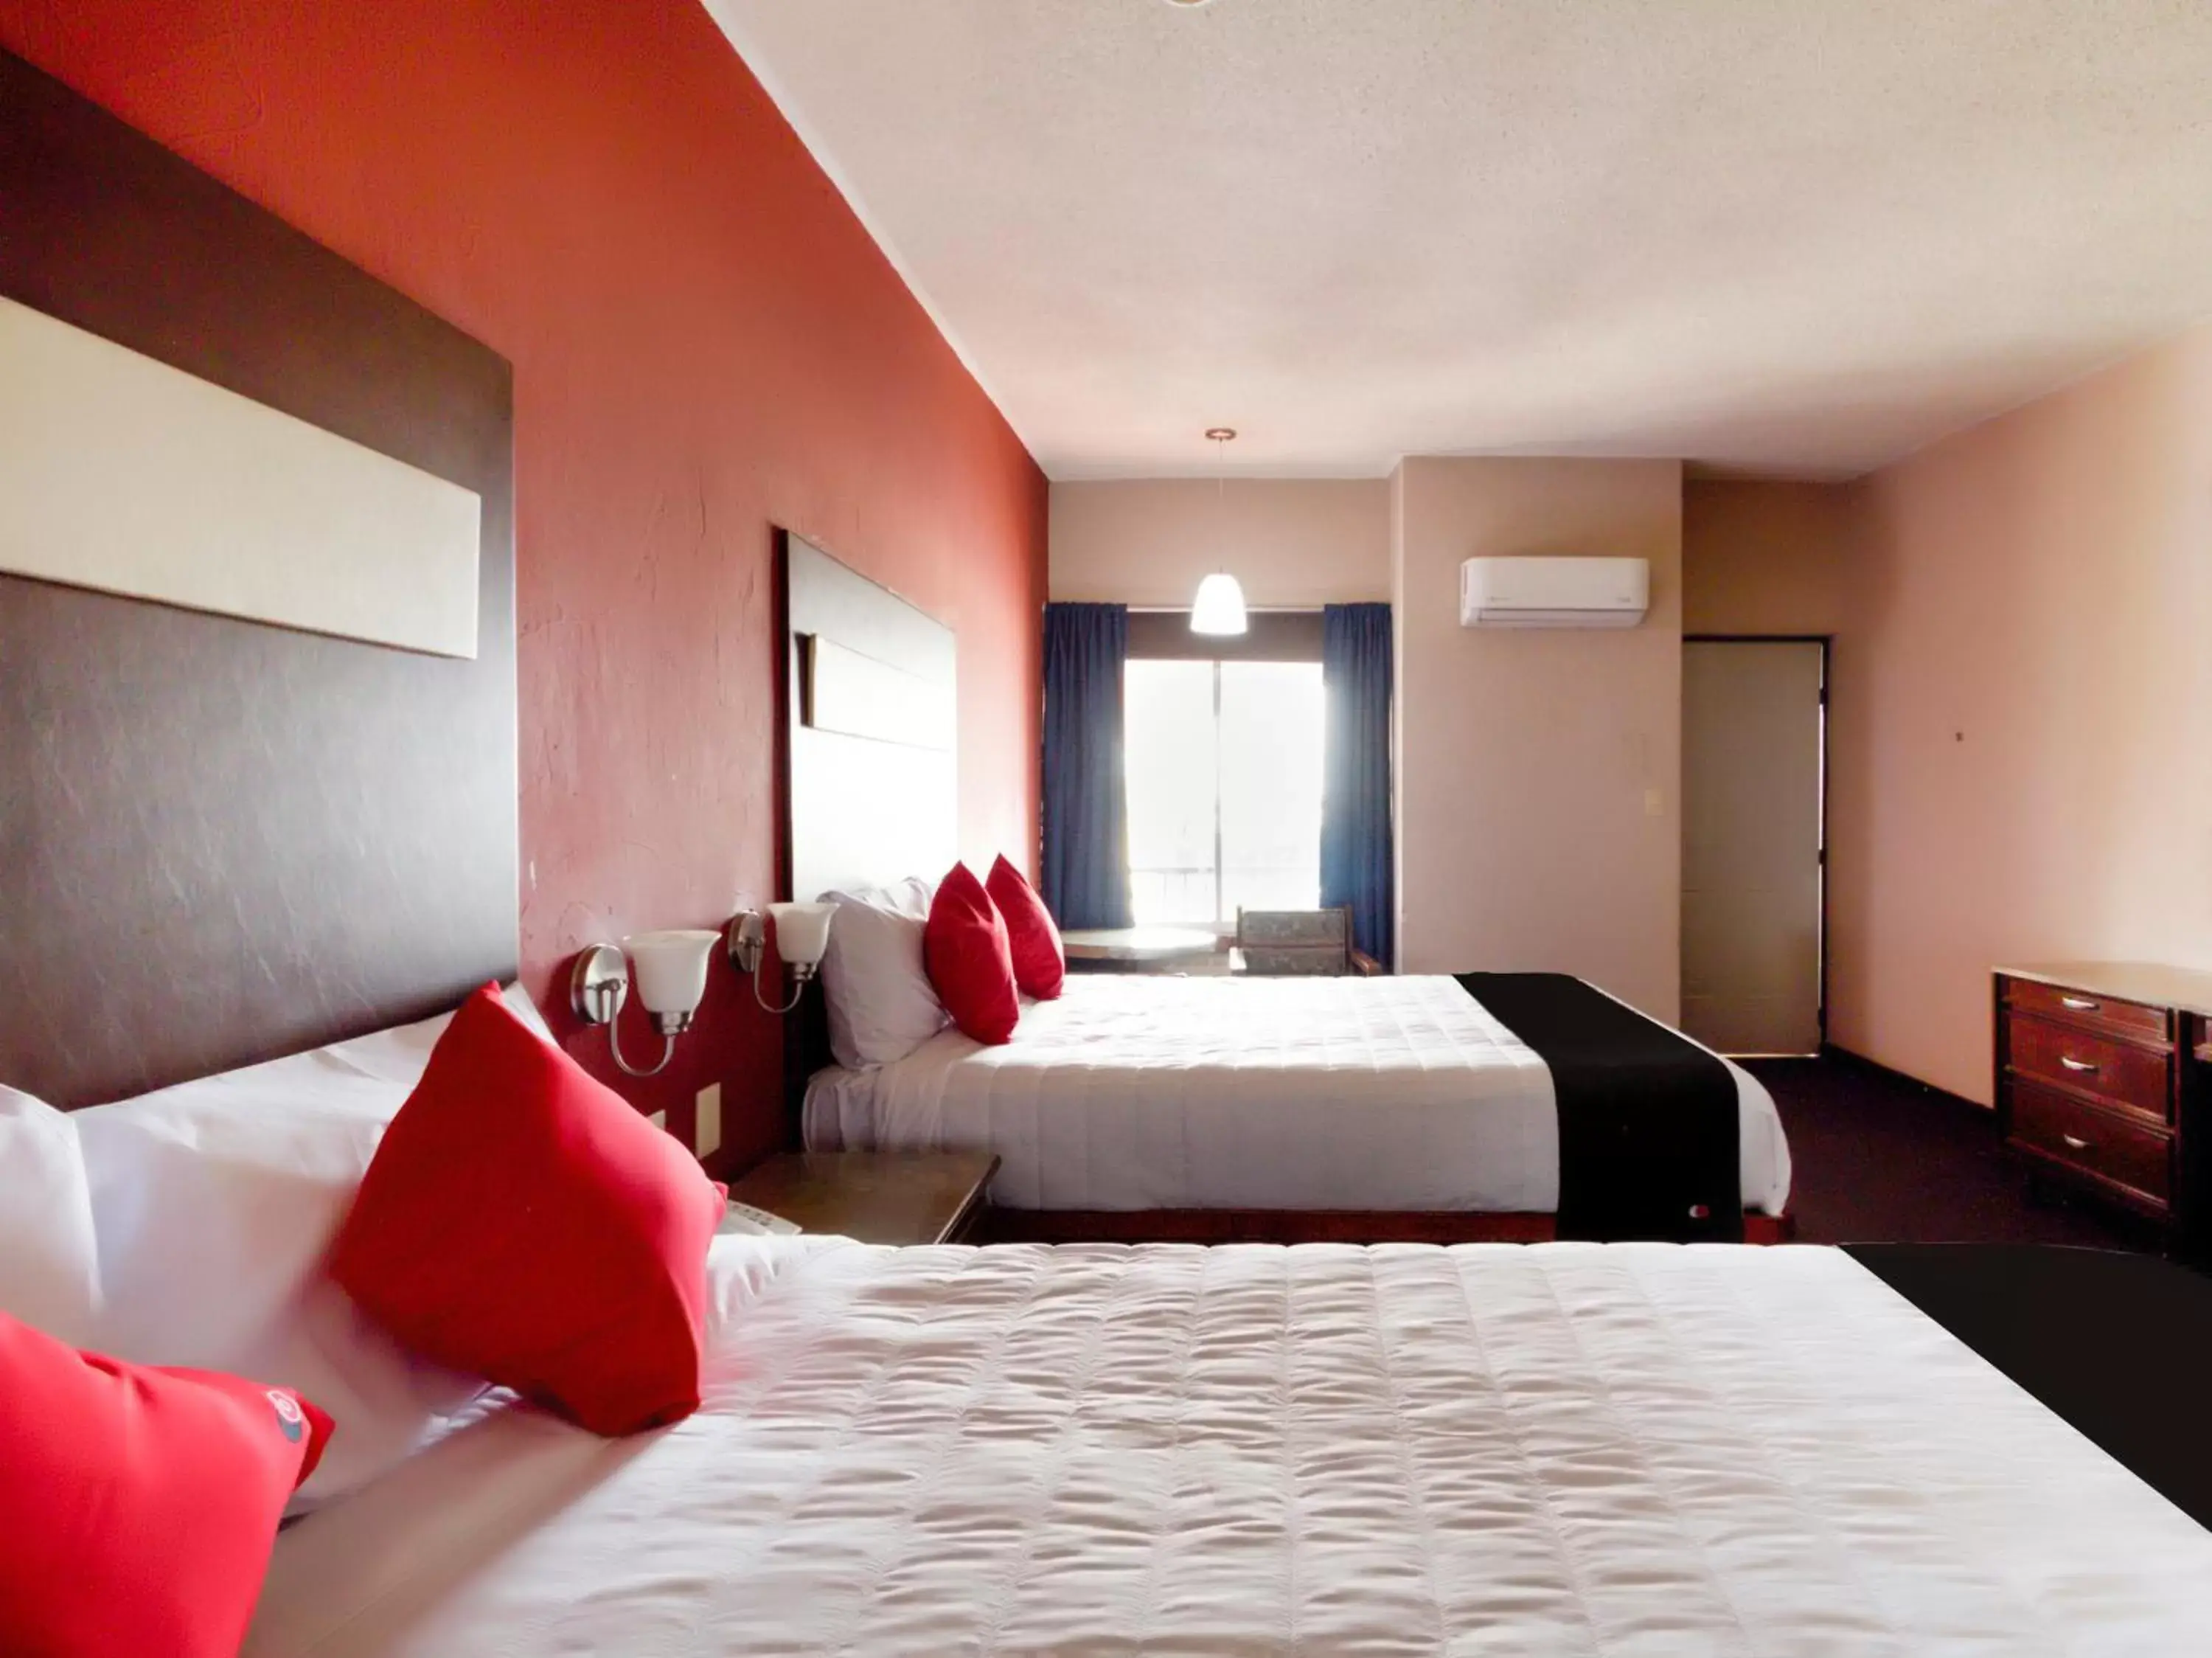 Bedroom in Hotel La Fuente, Saltillo